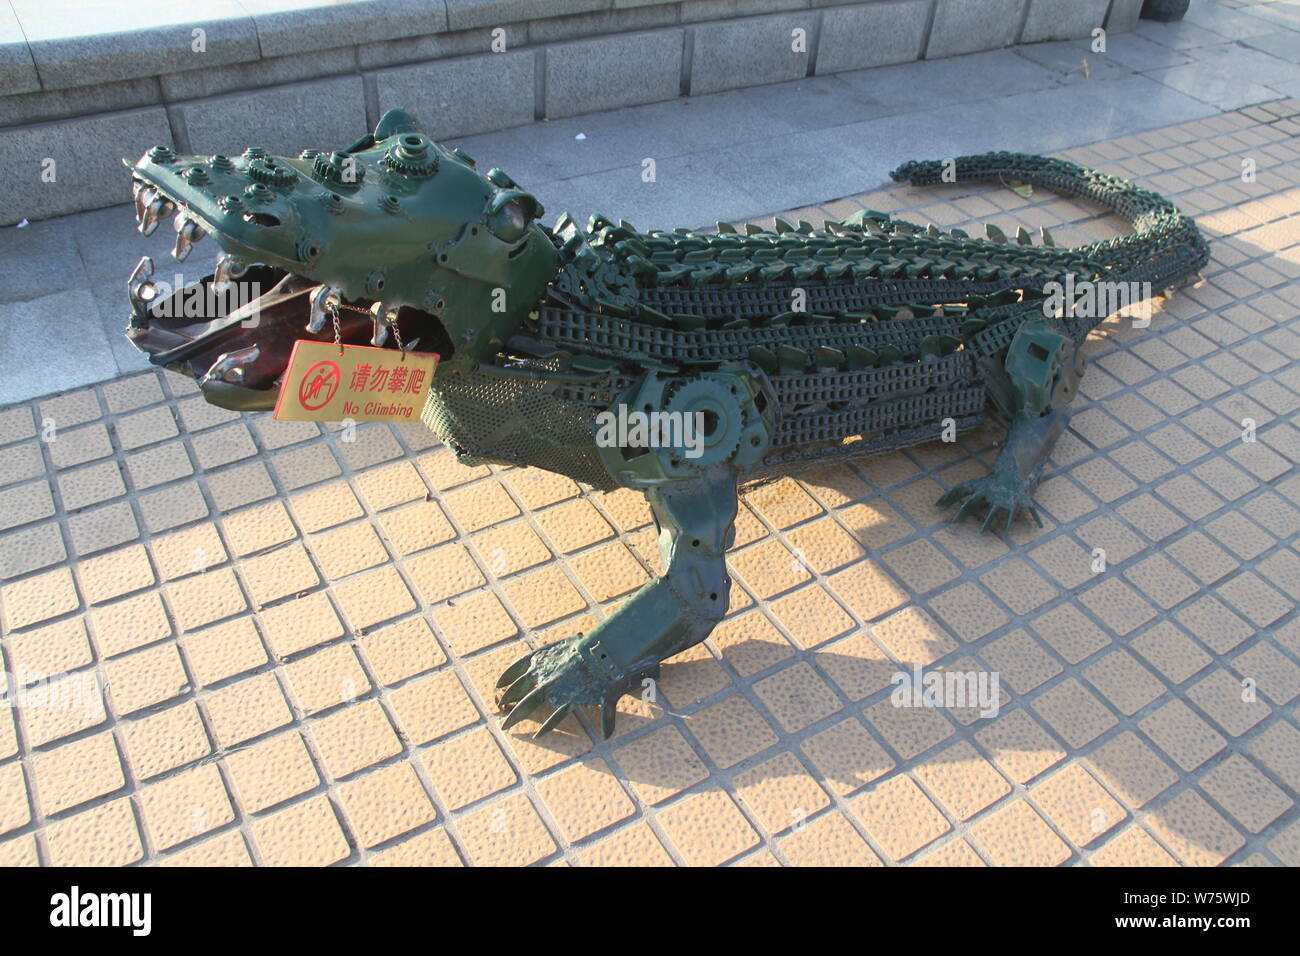 Un crocodile sculpture réalisée à partir de pièces automobiles de rechange et de la ferraille est exposée sur une place de la ville de Ji'nan, l'est de la Chine la province de Shandong, 17 Décembre Banque D'Images